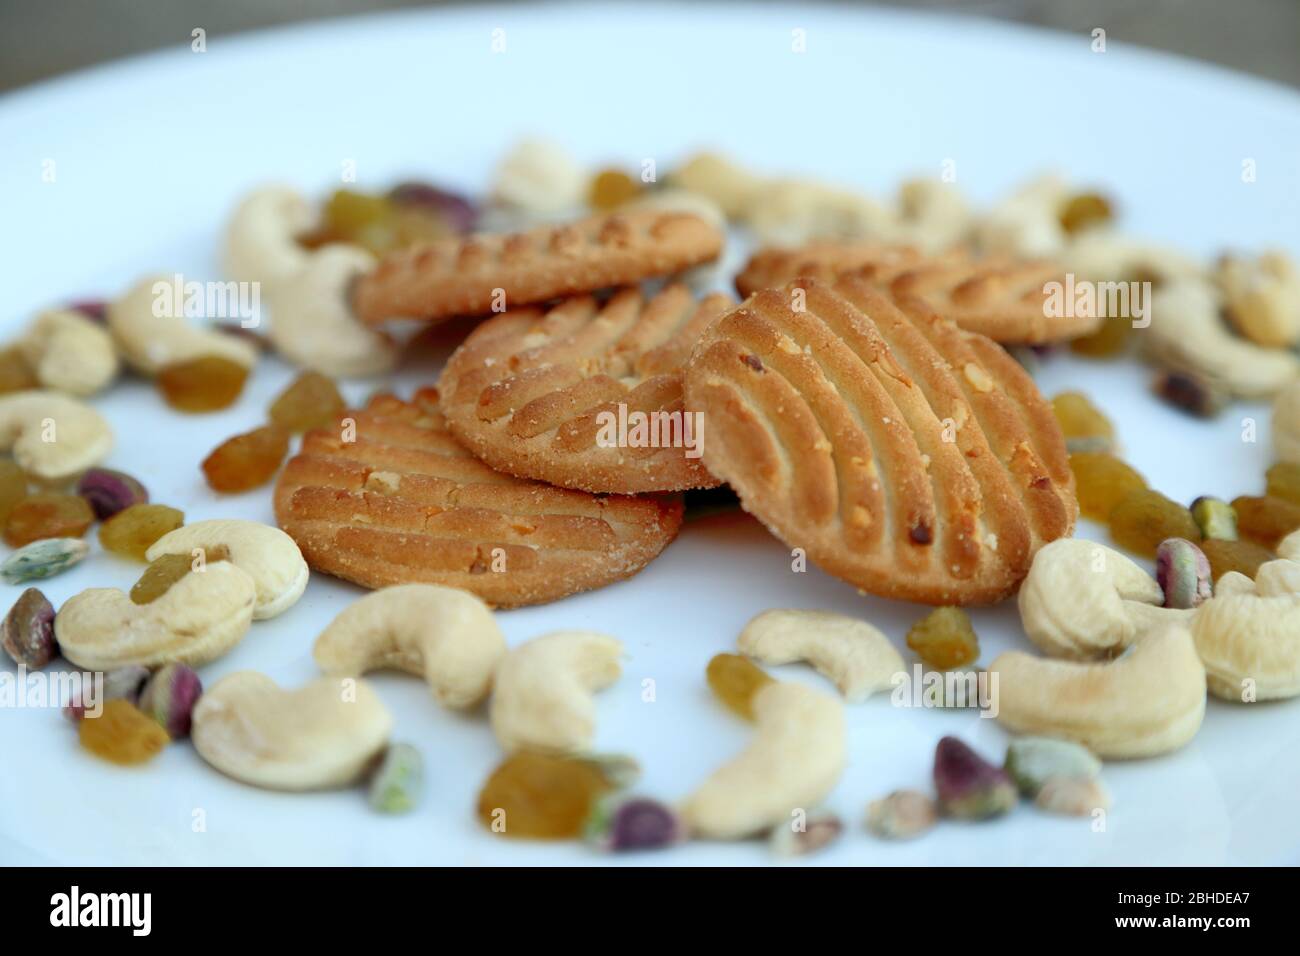 Kekse oder Kekse mit trockenen Früchten. Gesunde Ernährung. Stockfoto